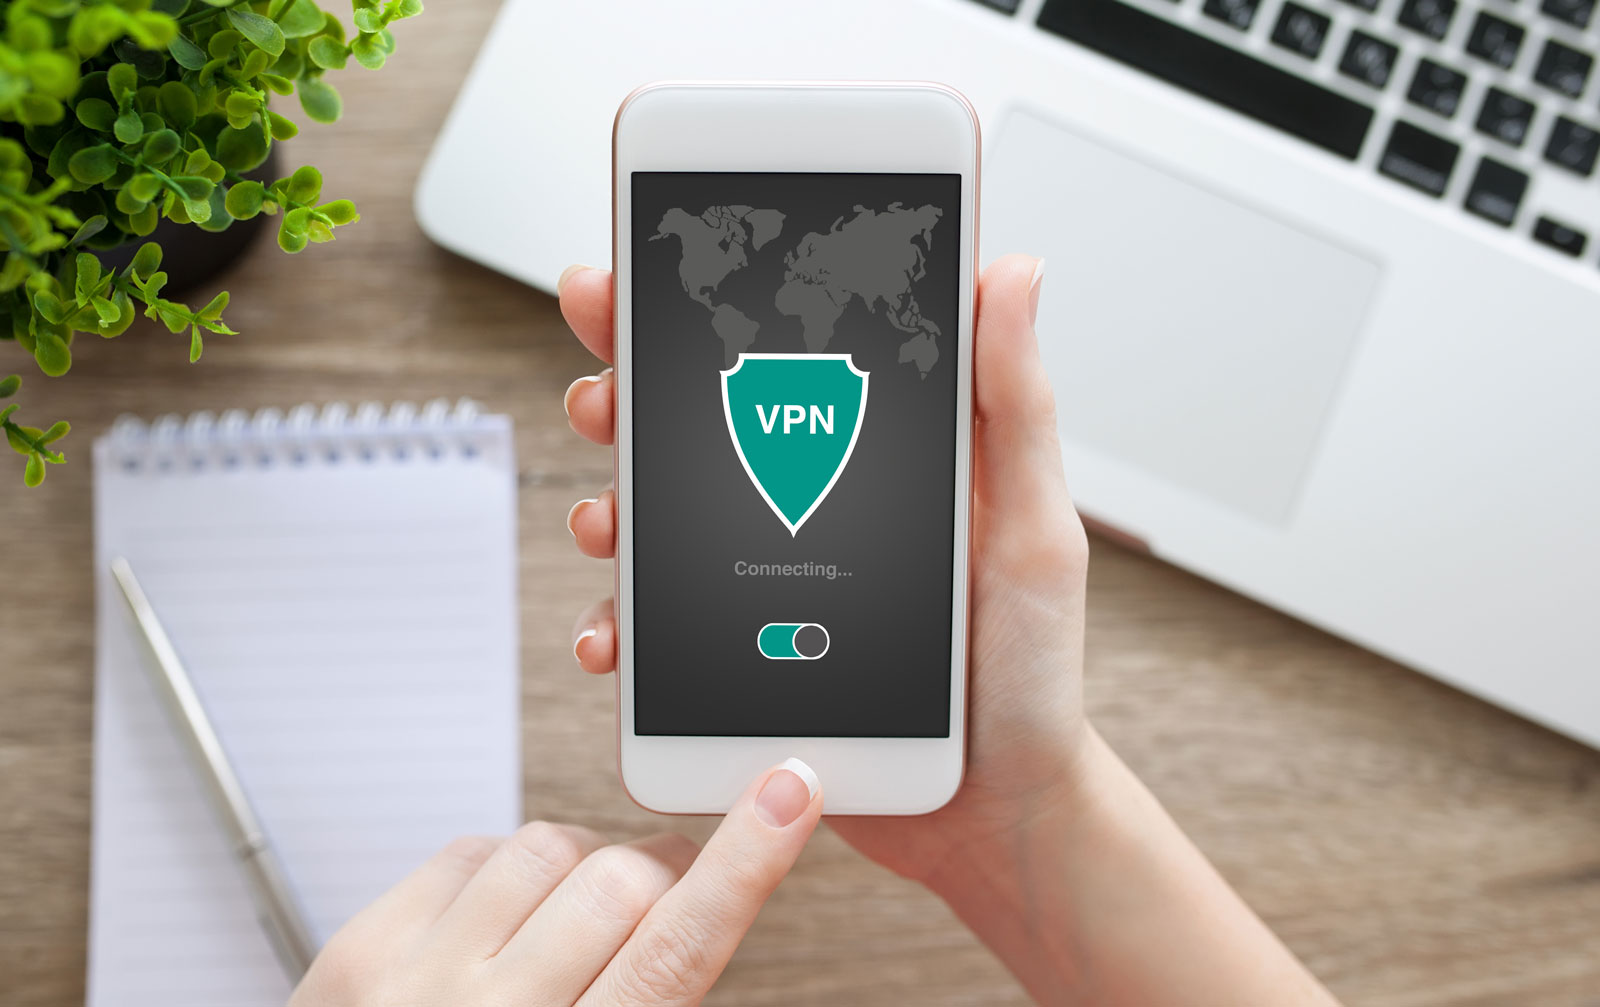 Good luck finding a safe VPN